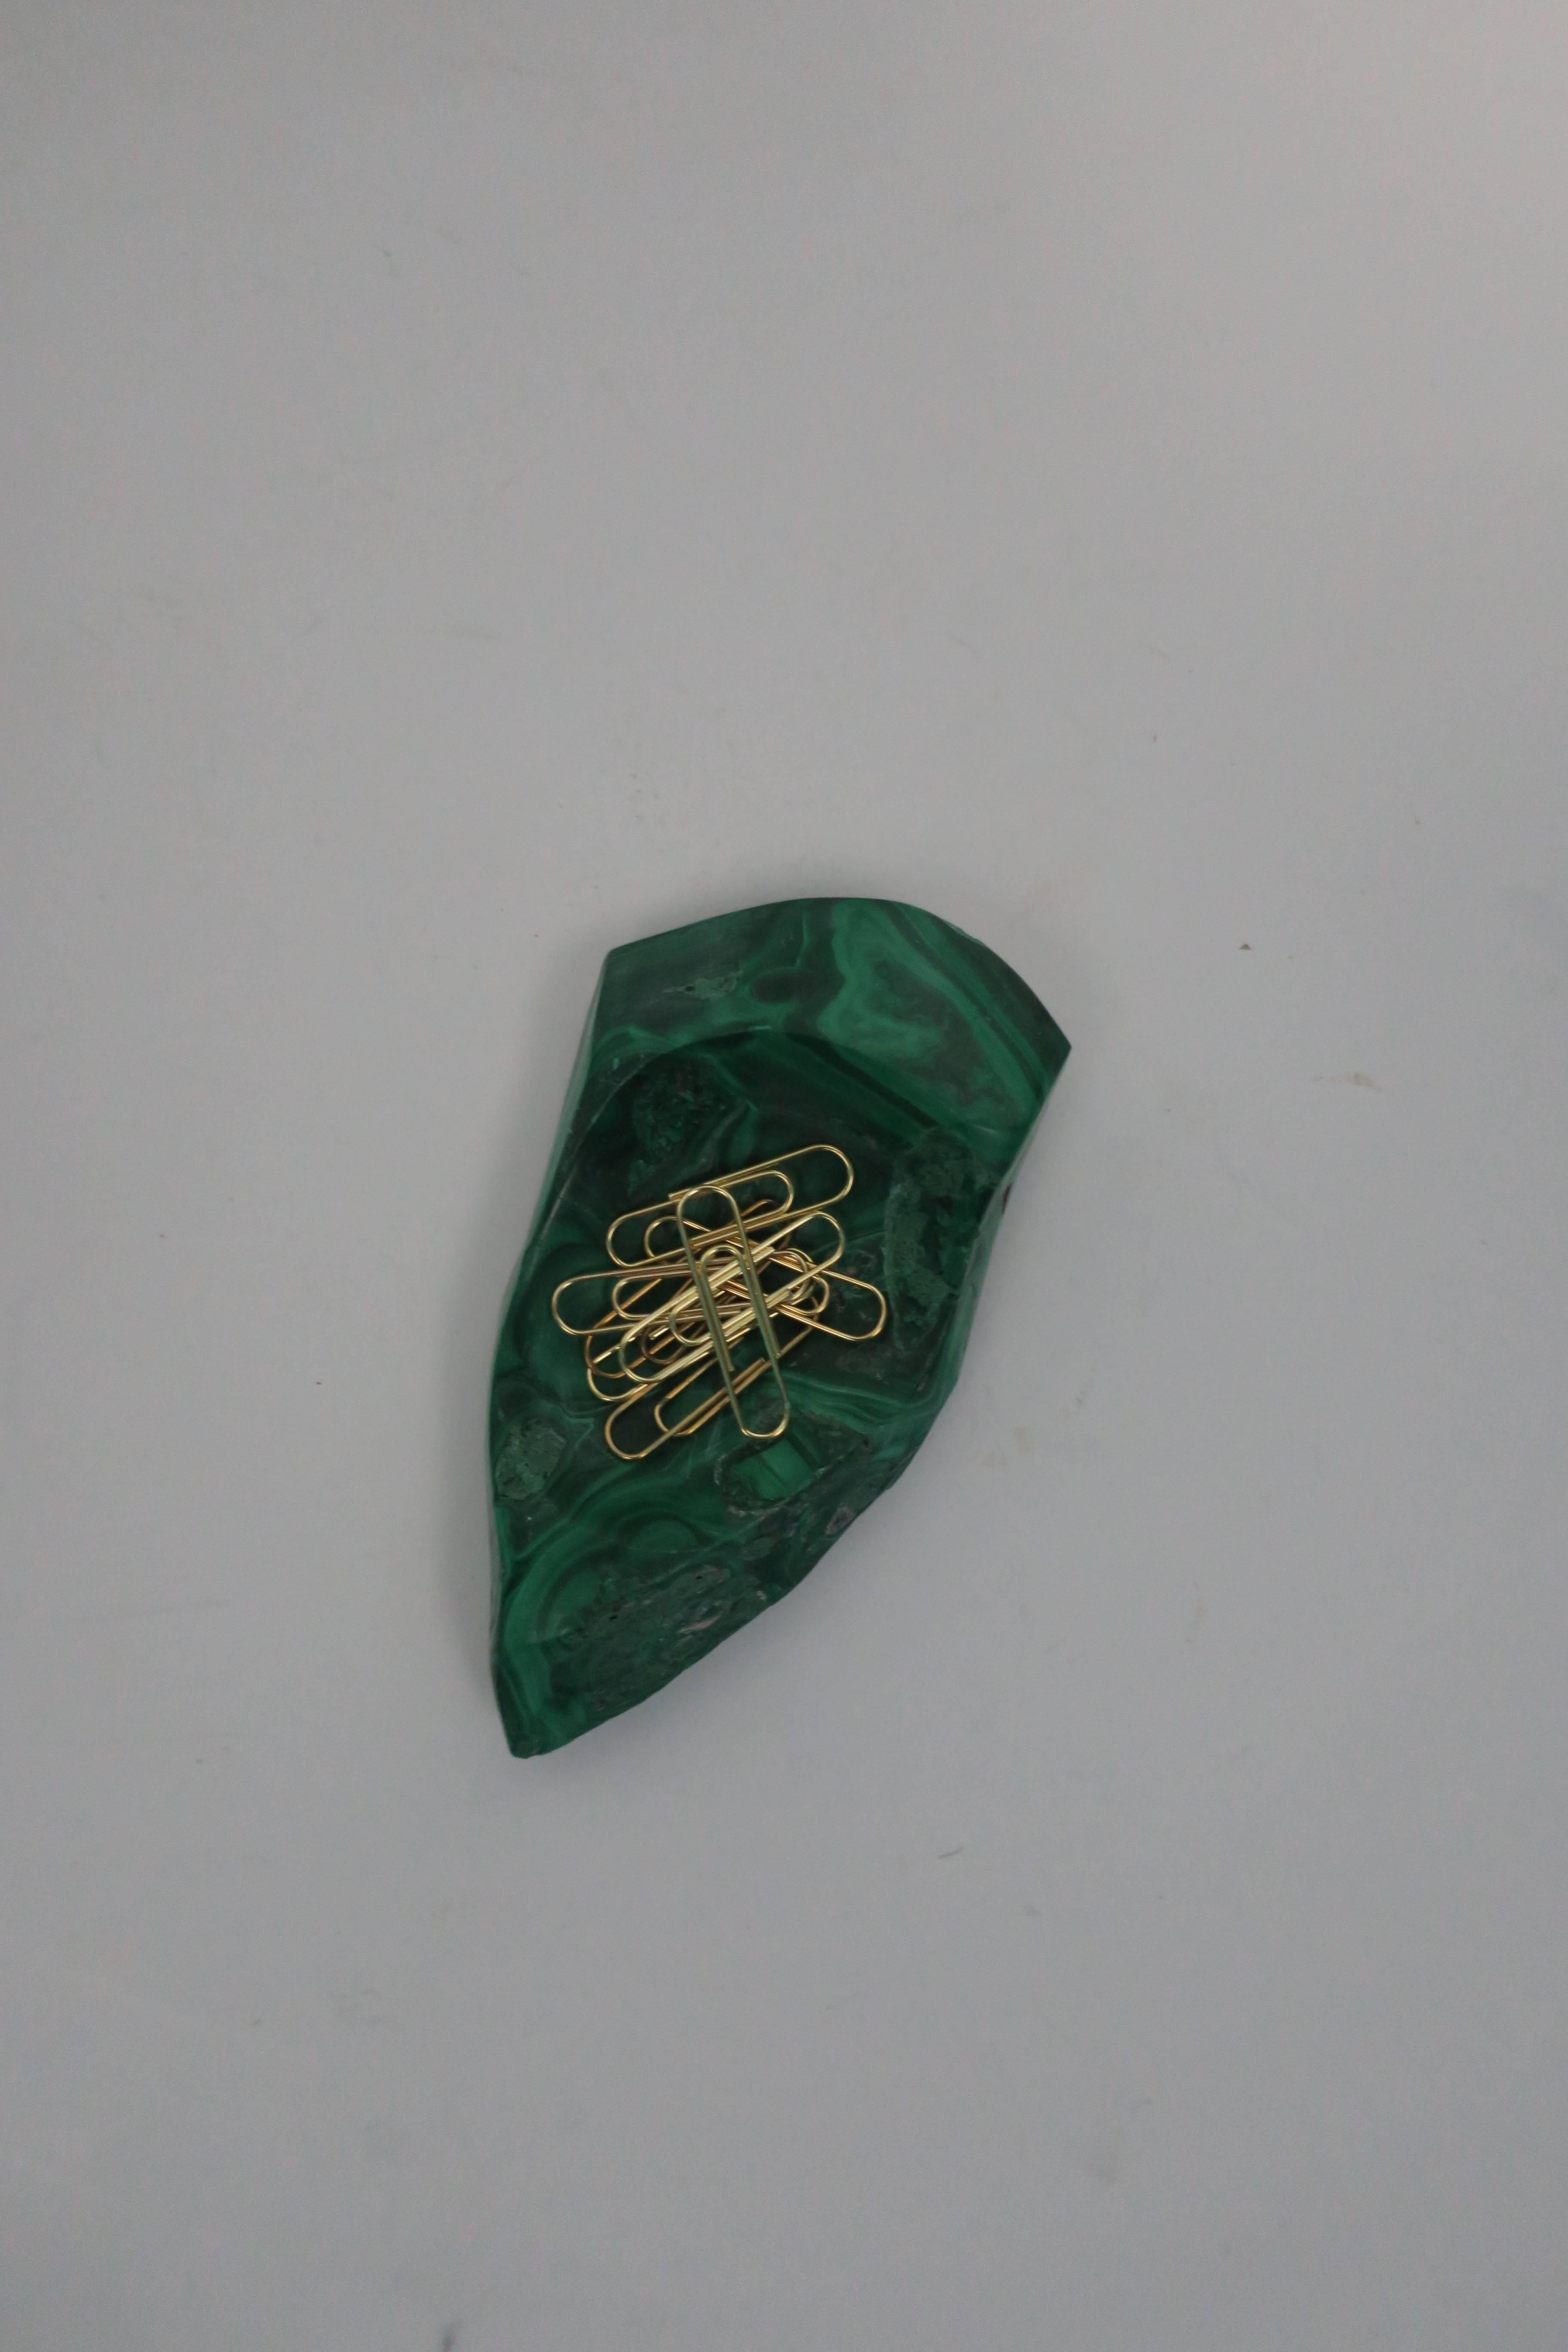 Green Malachite Desk Vessel or Jewelry Dish 8